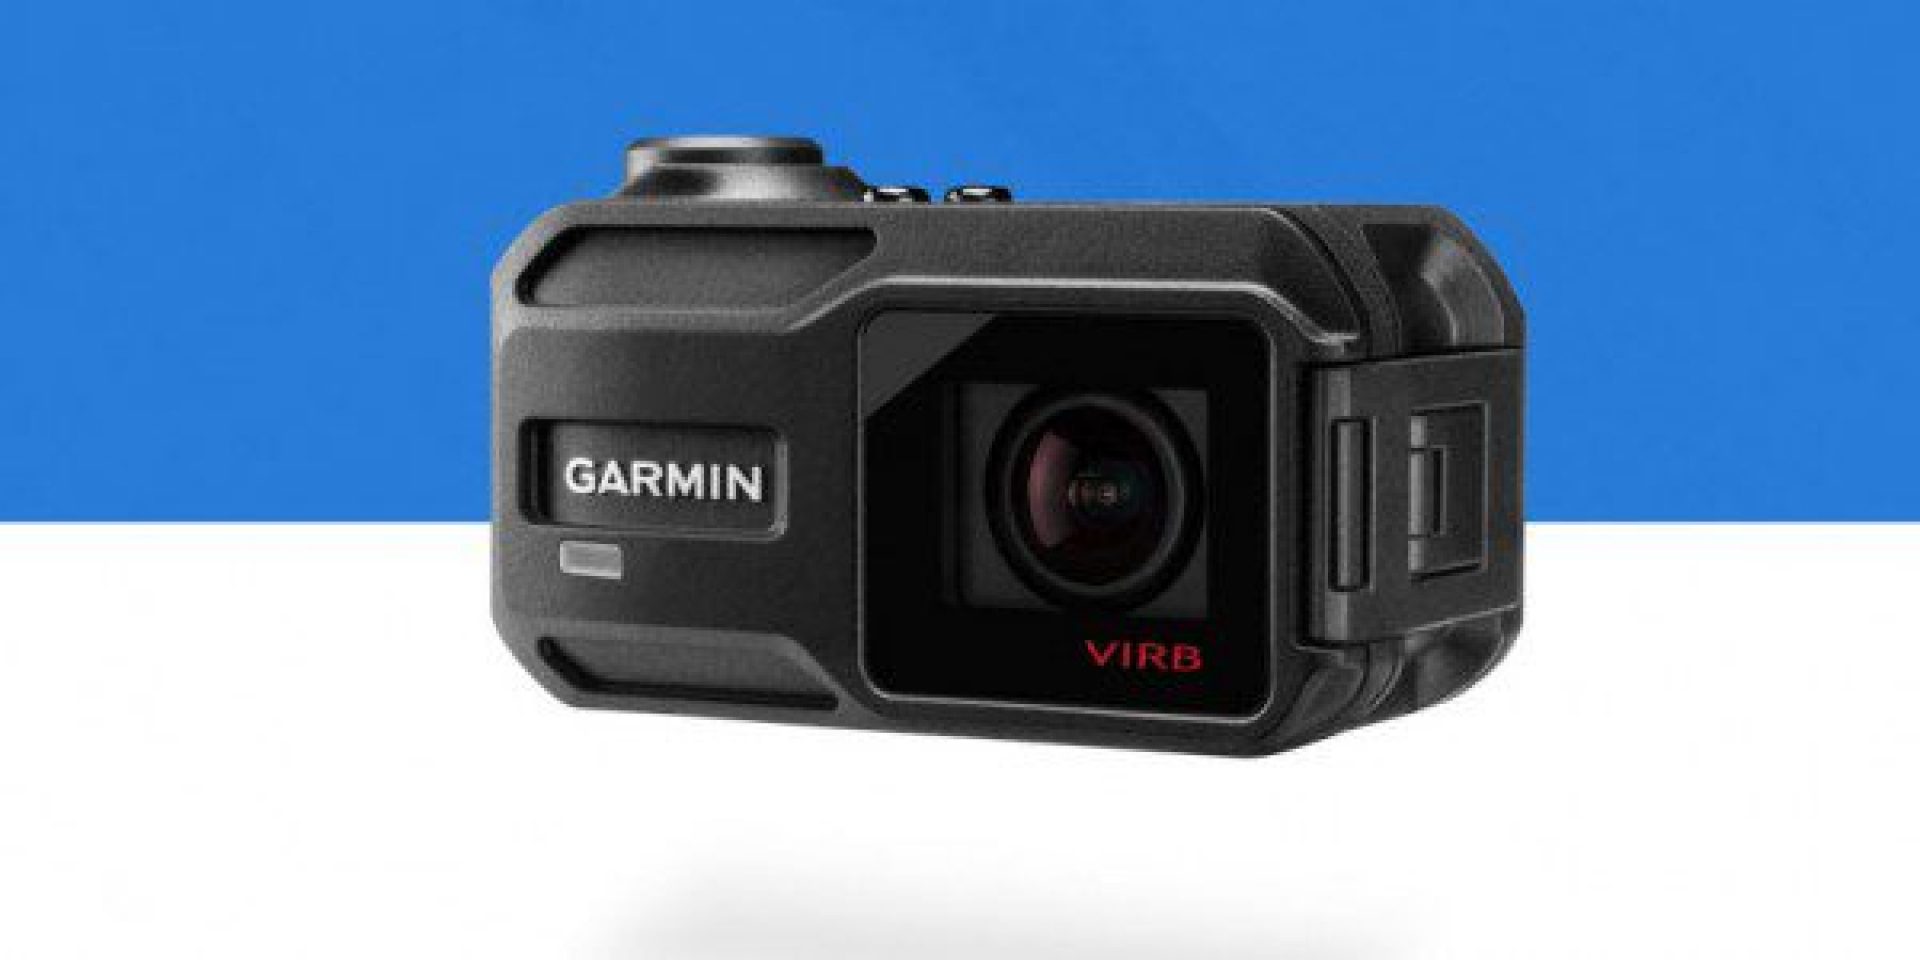 Garmin-Virb-XE-action-camera-600x300